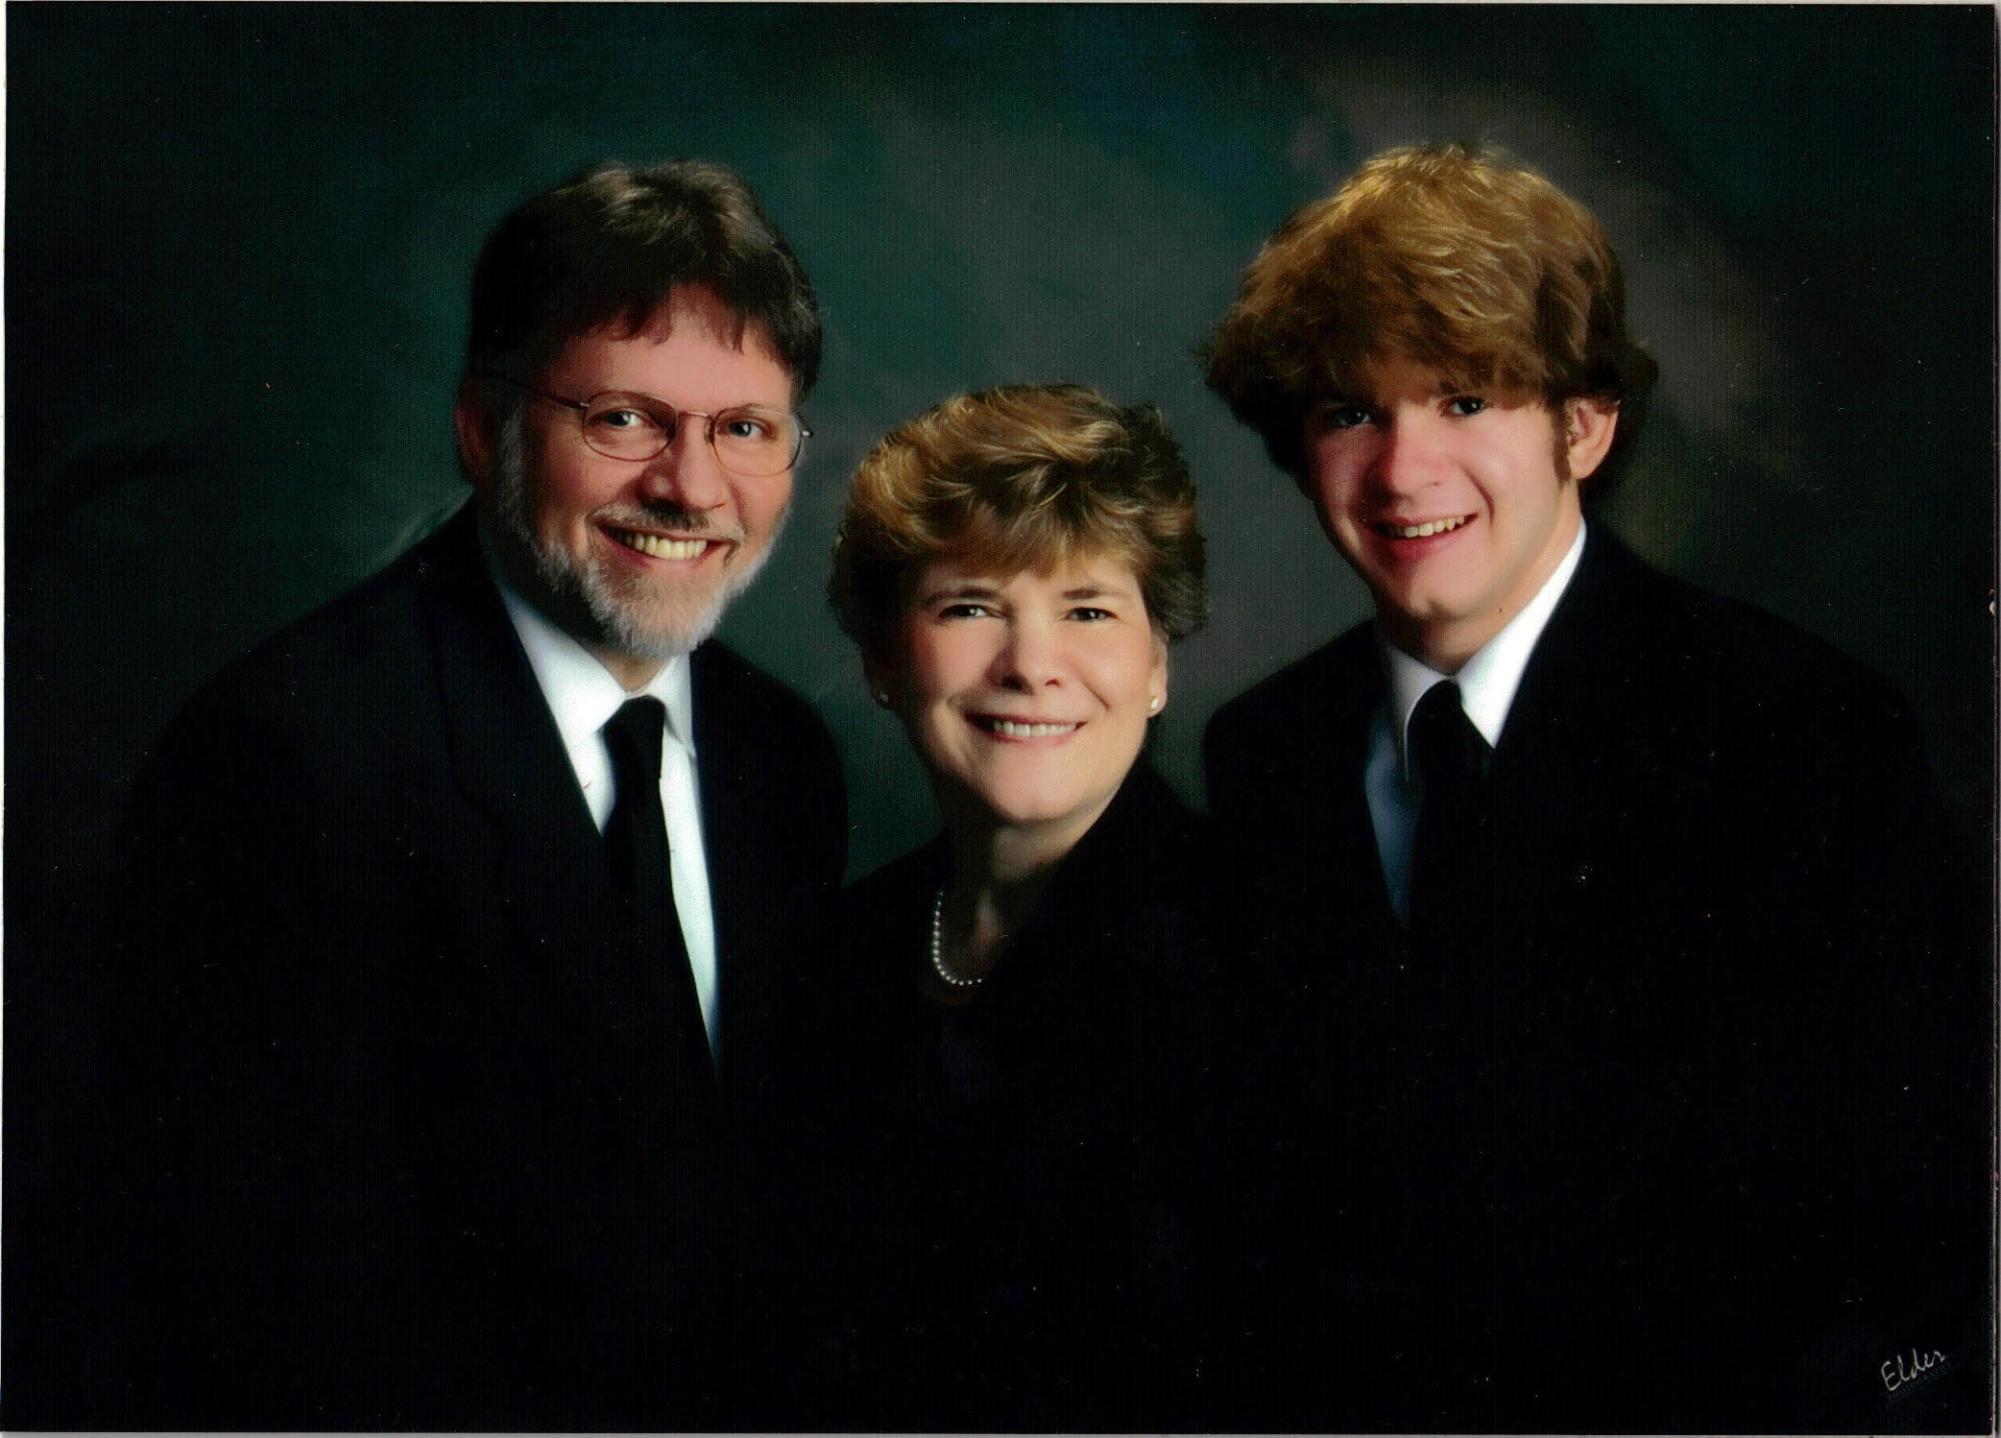 The McNitt Family in 2008